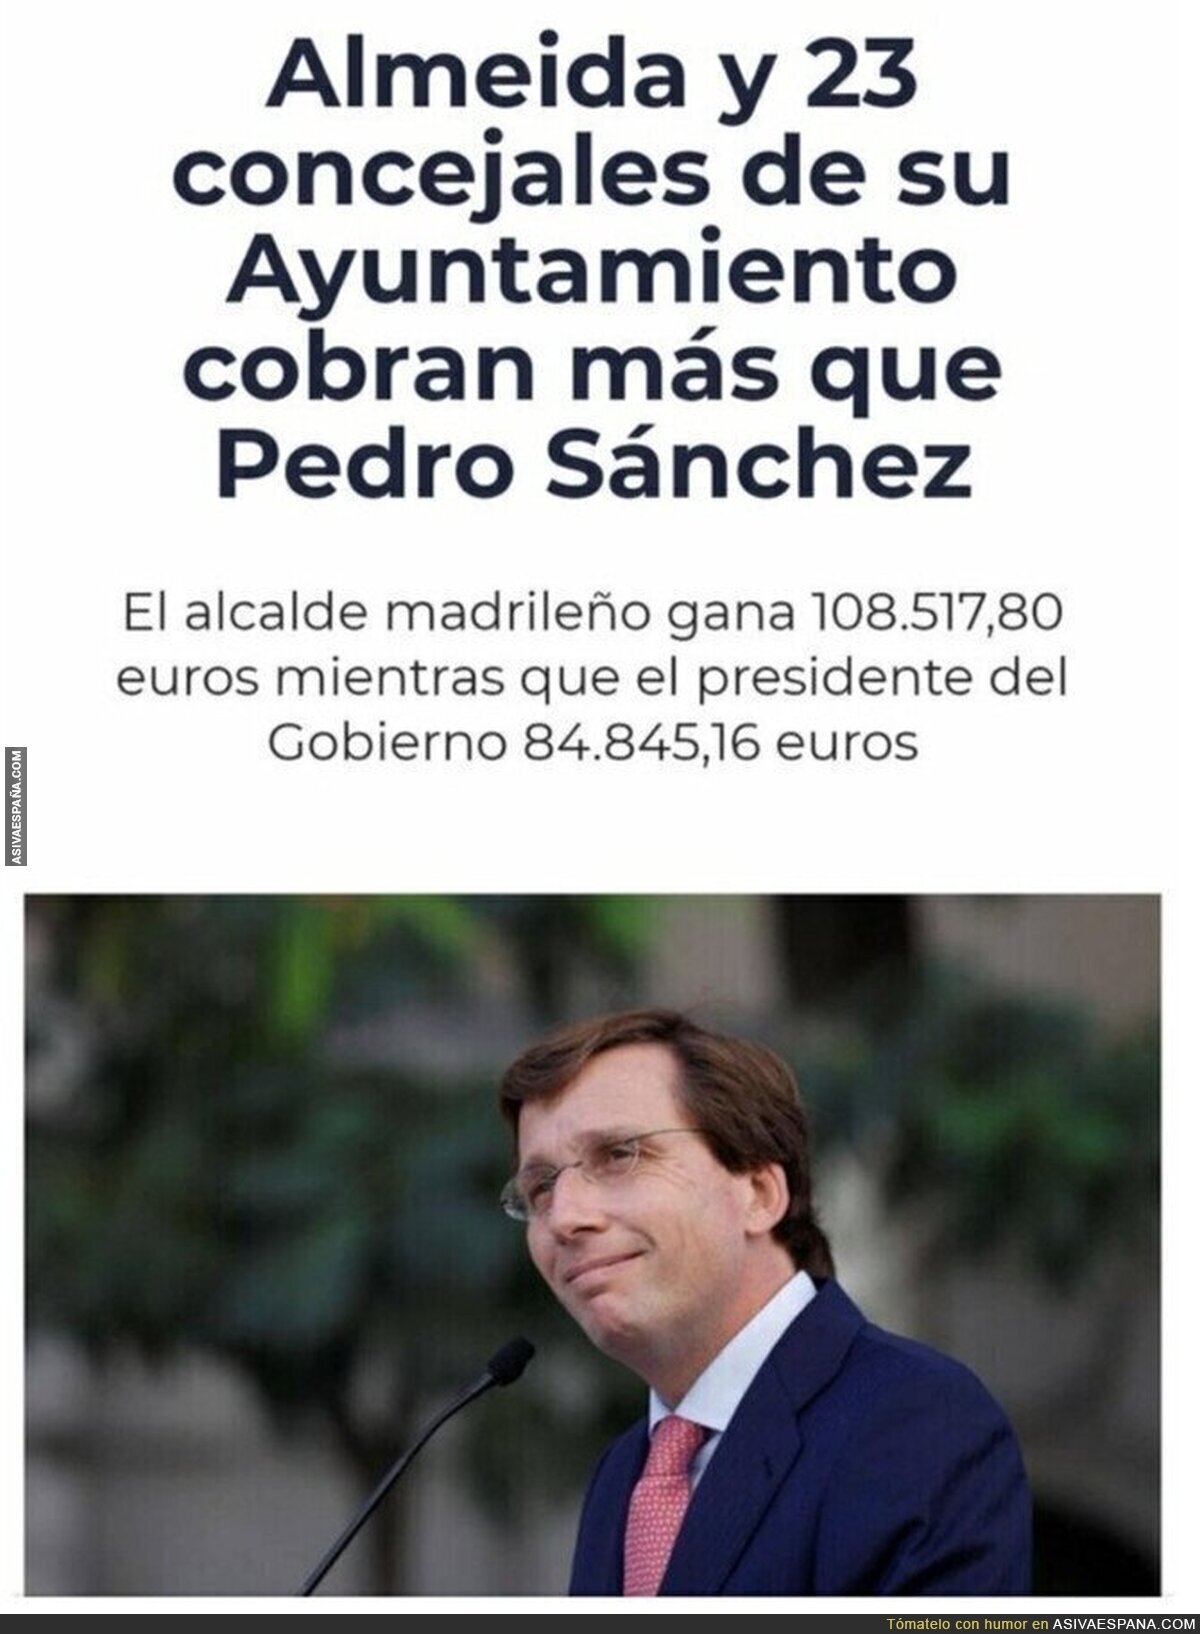 Un día saldrá quejándose de lo que cobra Pedro Sánchez